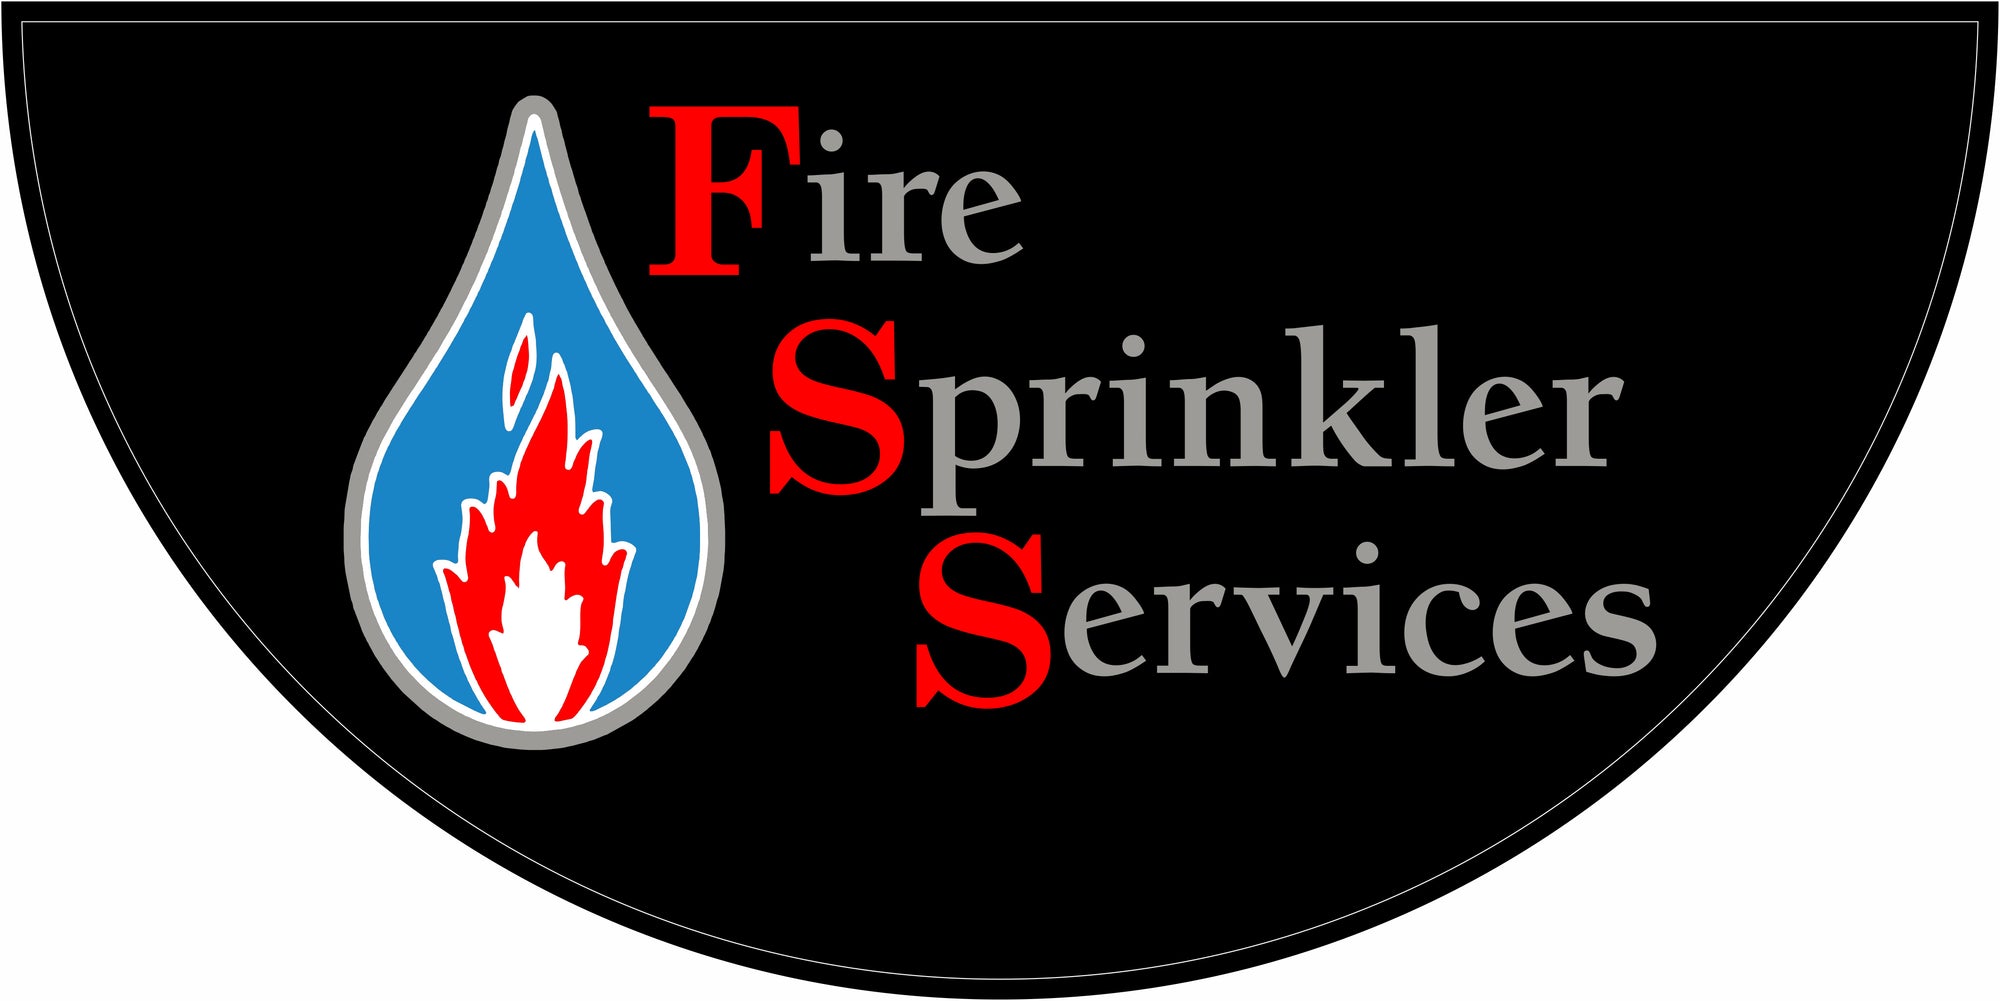 Fire Sprinkler Services FL, LLC §